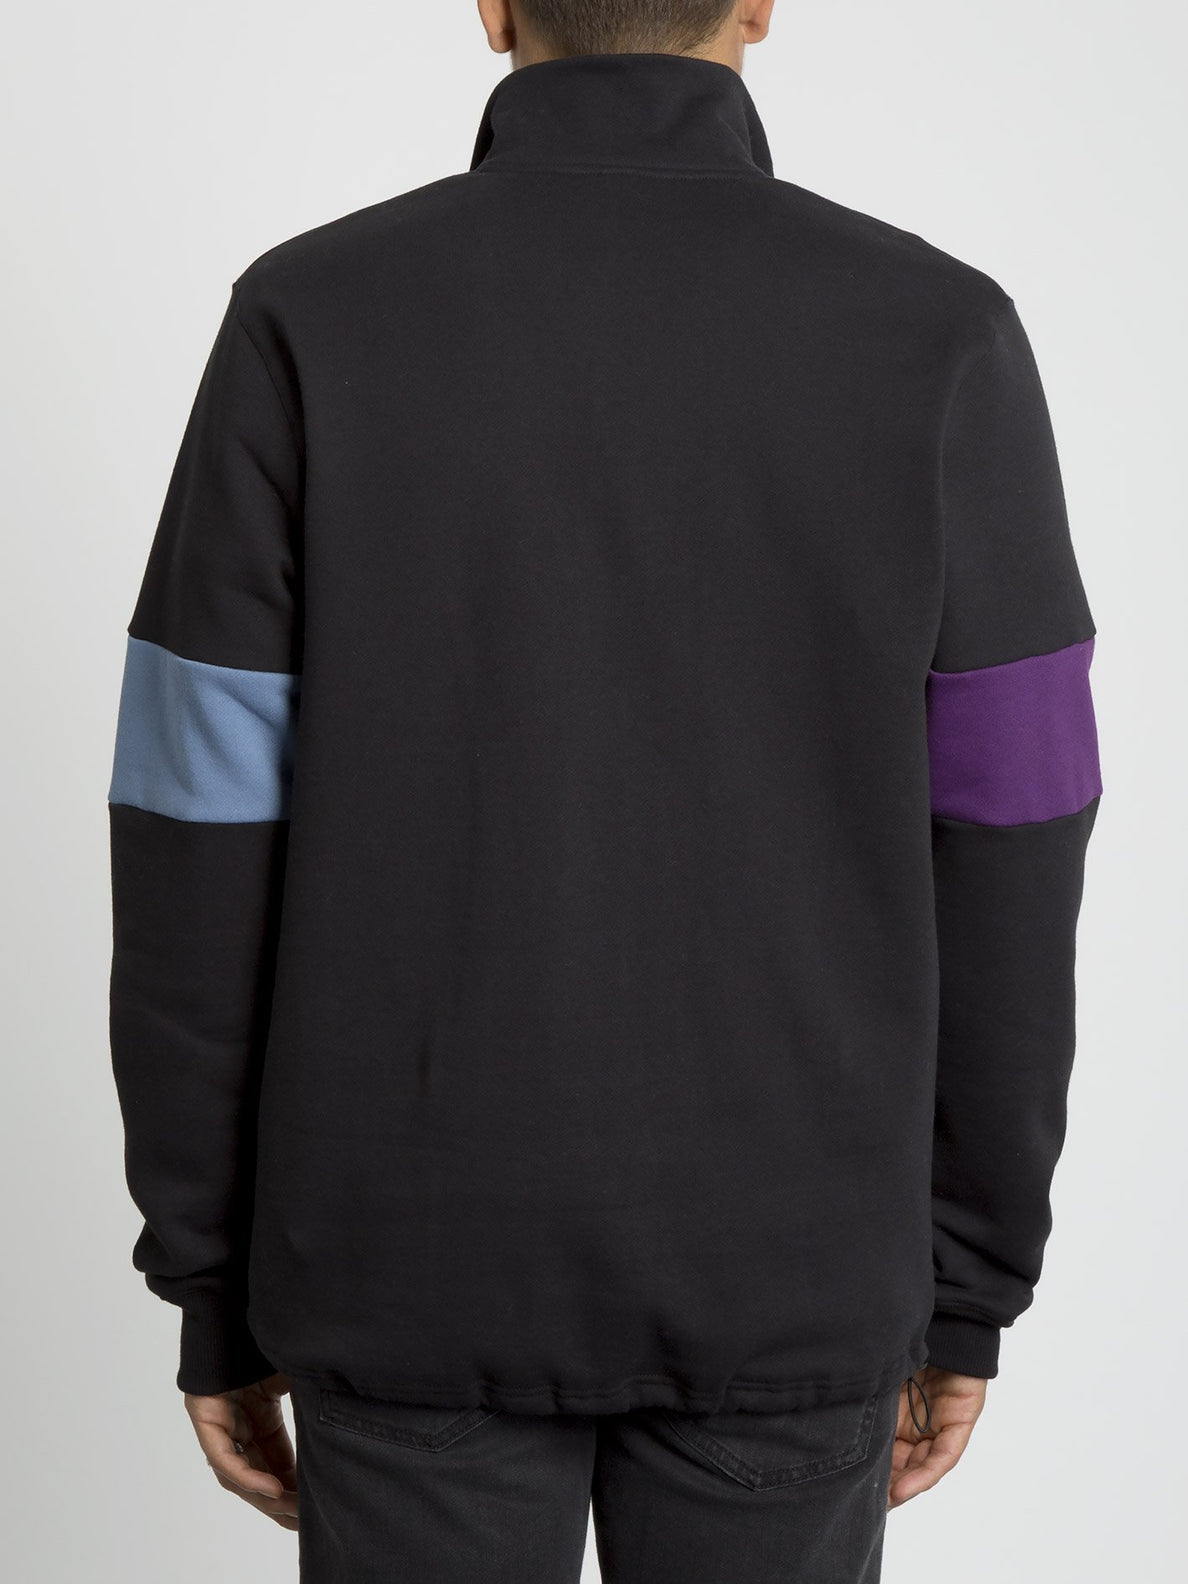 Rixon Fleece Sweater - Black (A4631907_BLK) [B]?id=8609243430971